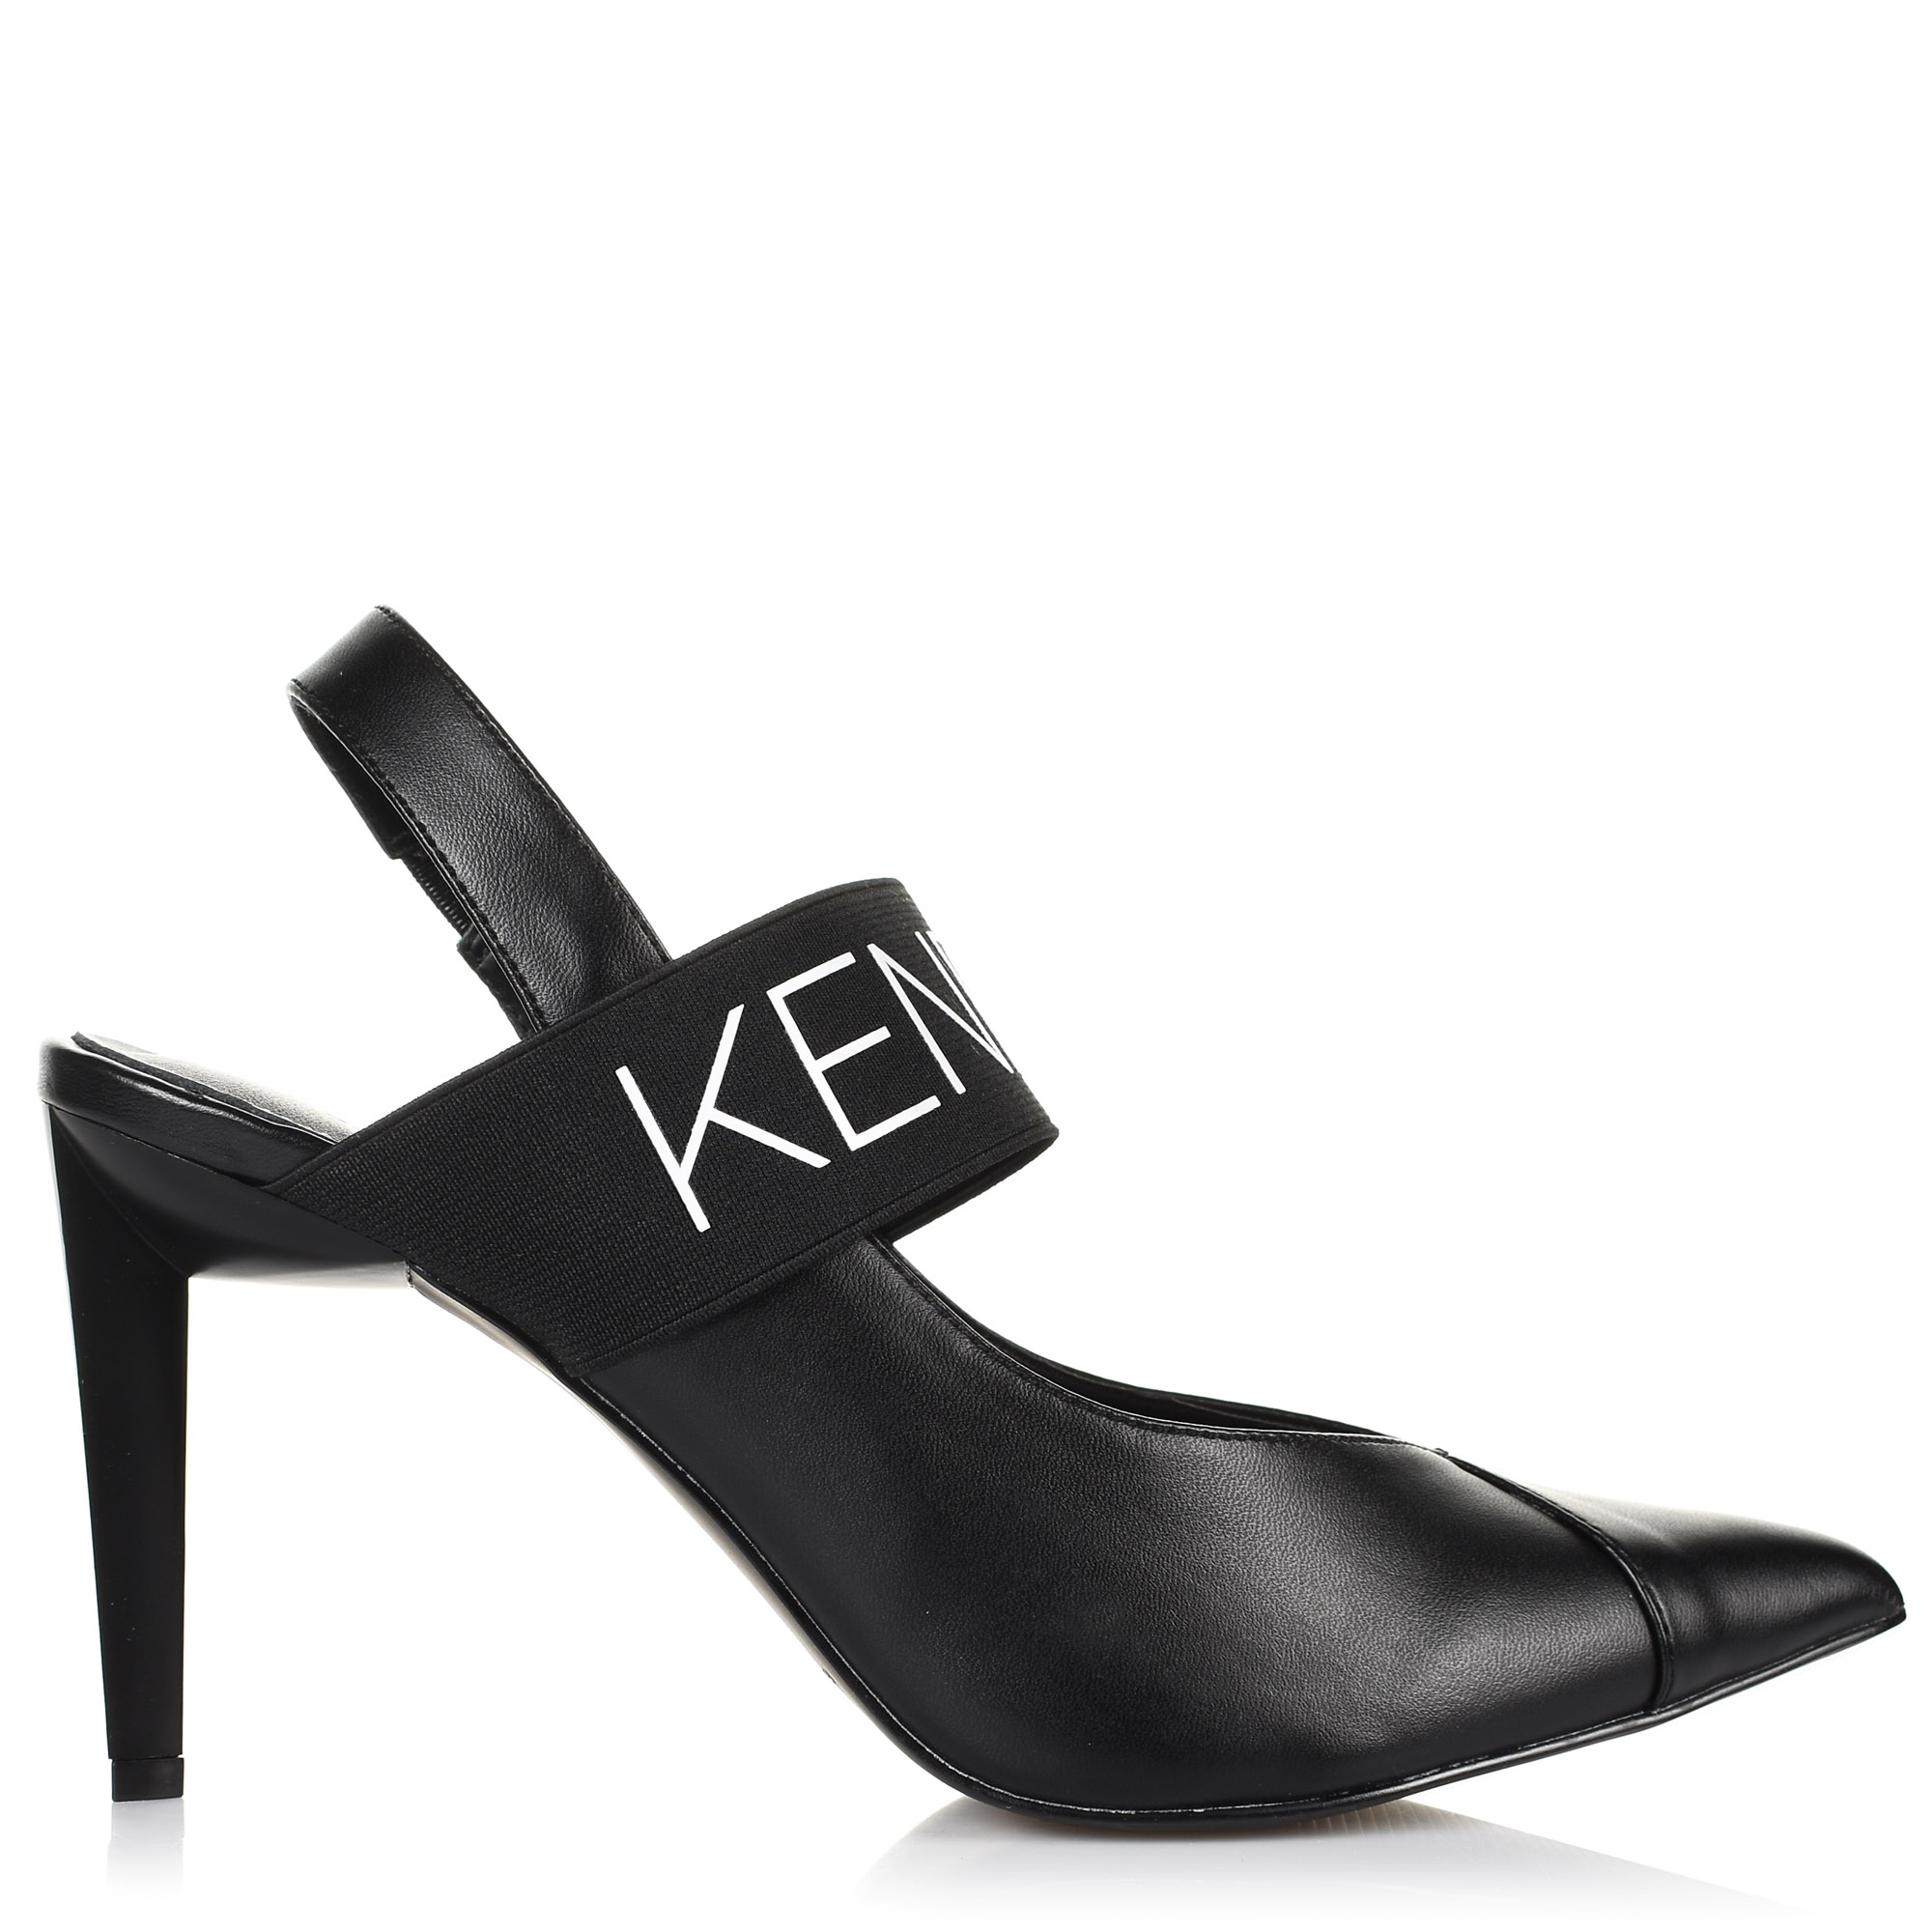 Πέδιλα Kendall + Kylie Zian 75918 Γυναίκα  Γυναικείο παπούτσι